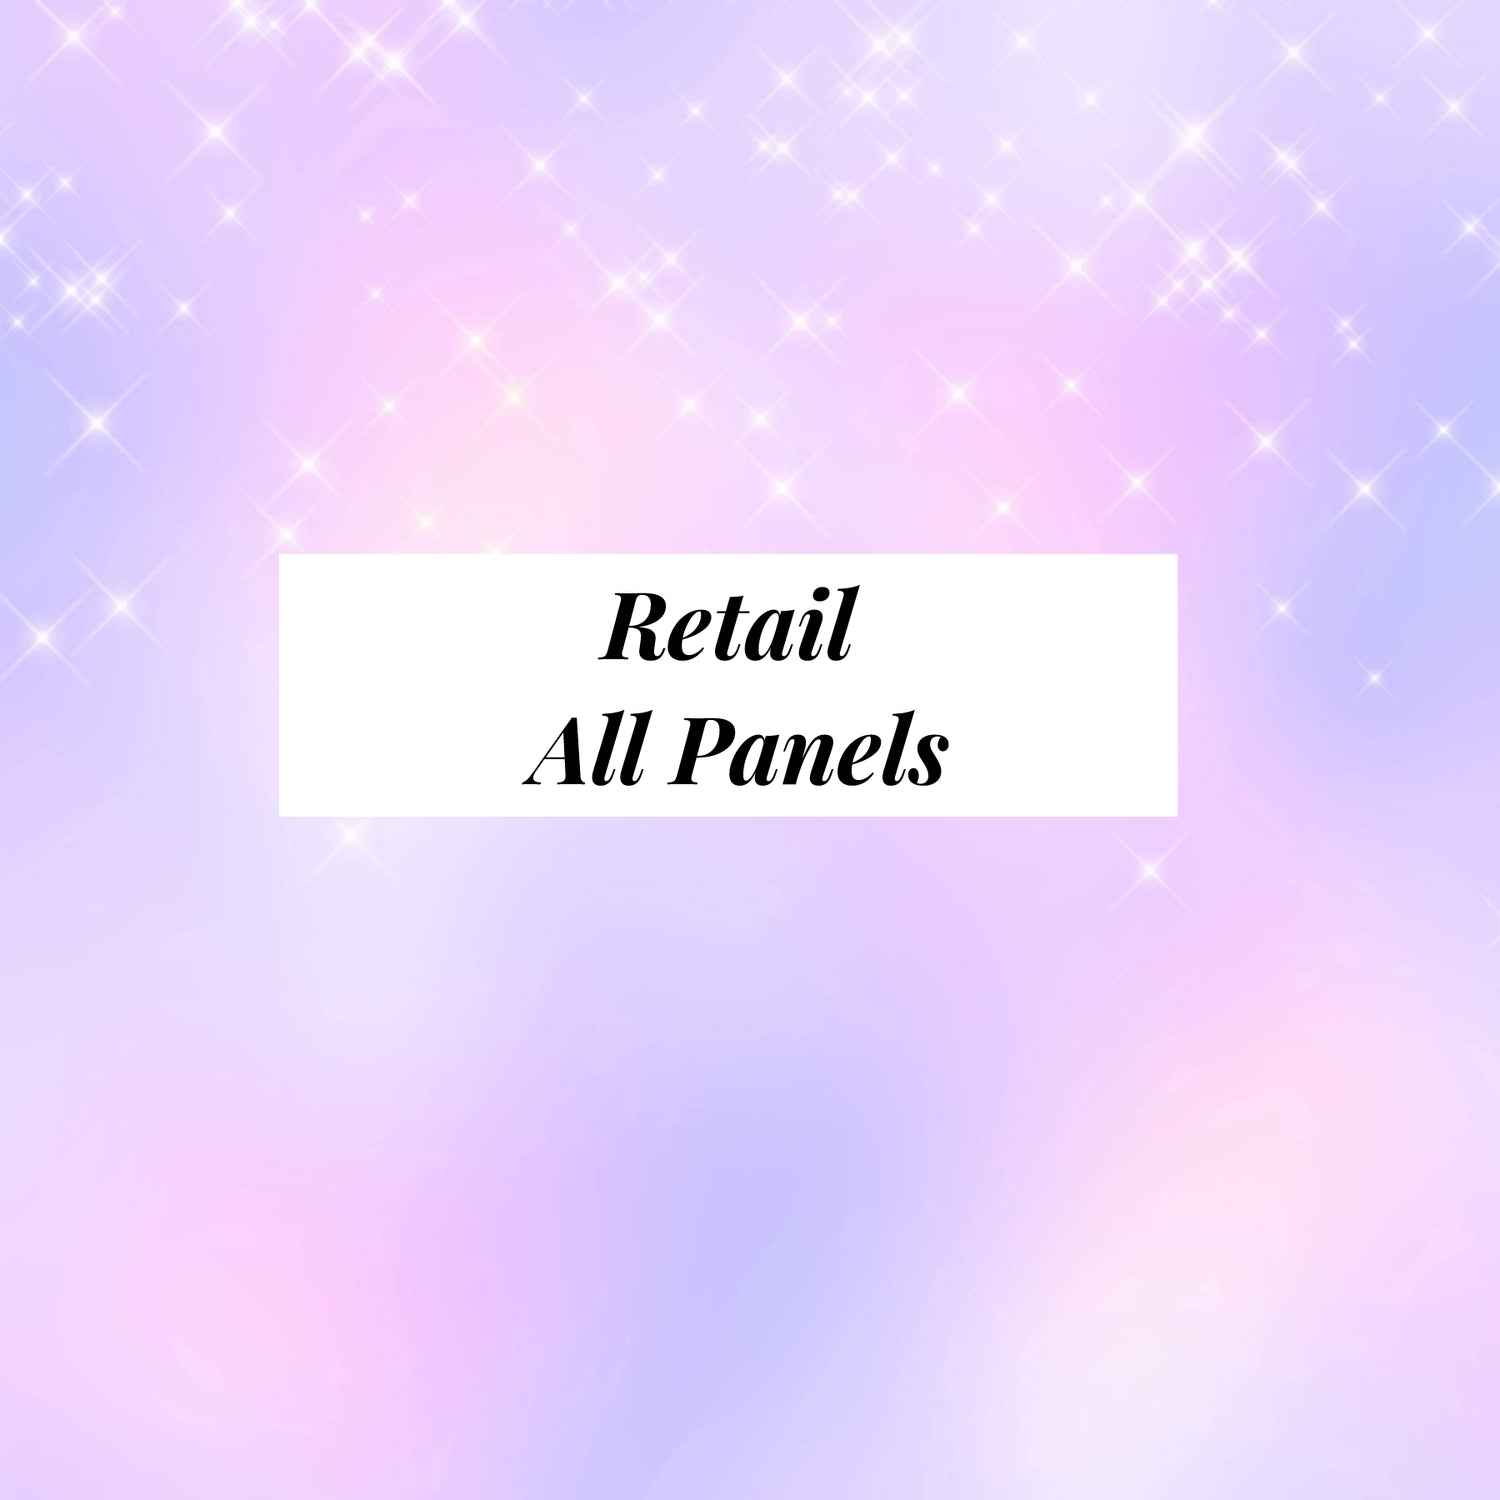 Retail Panels